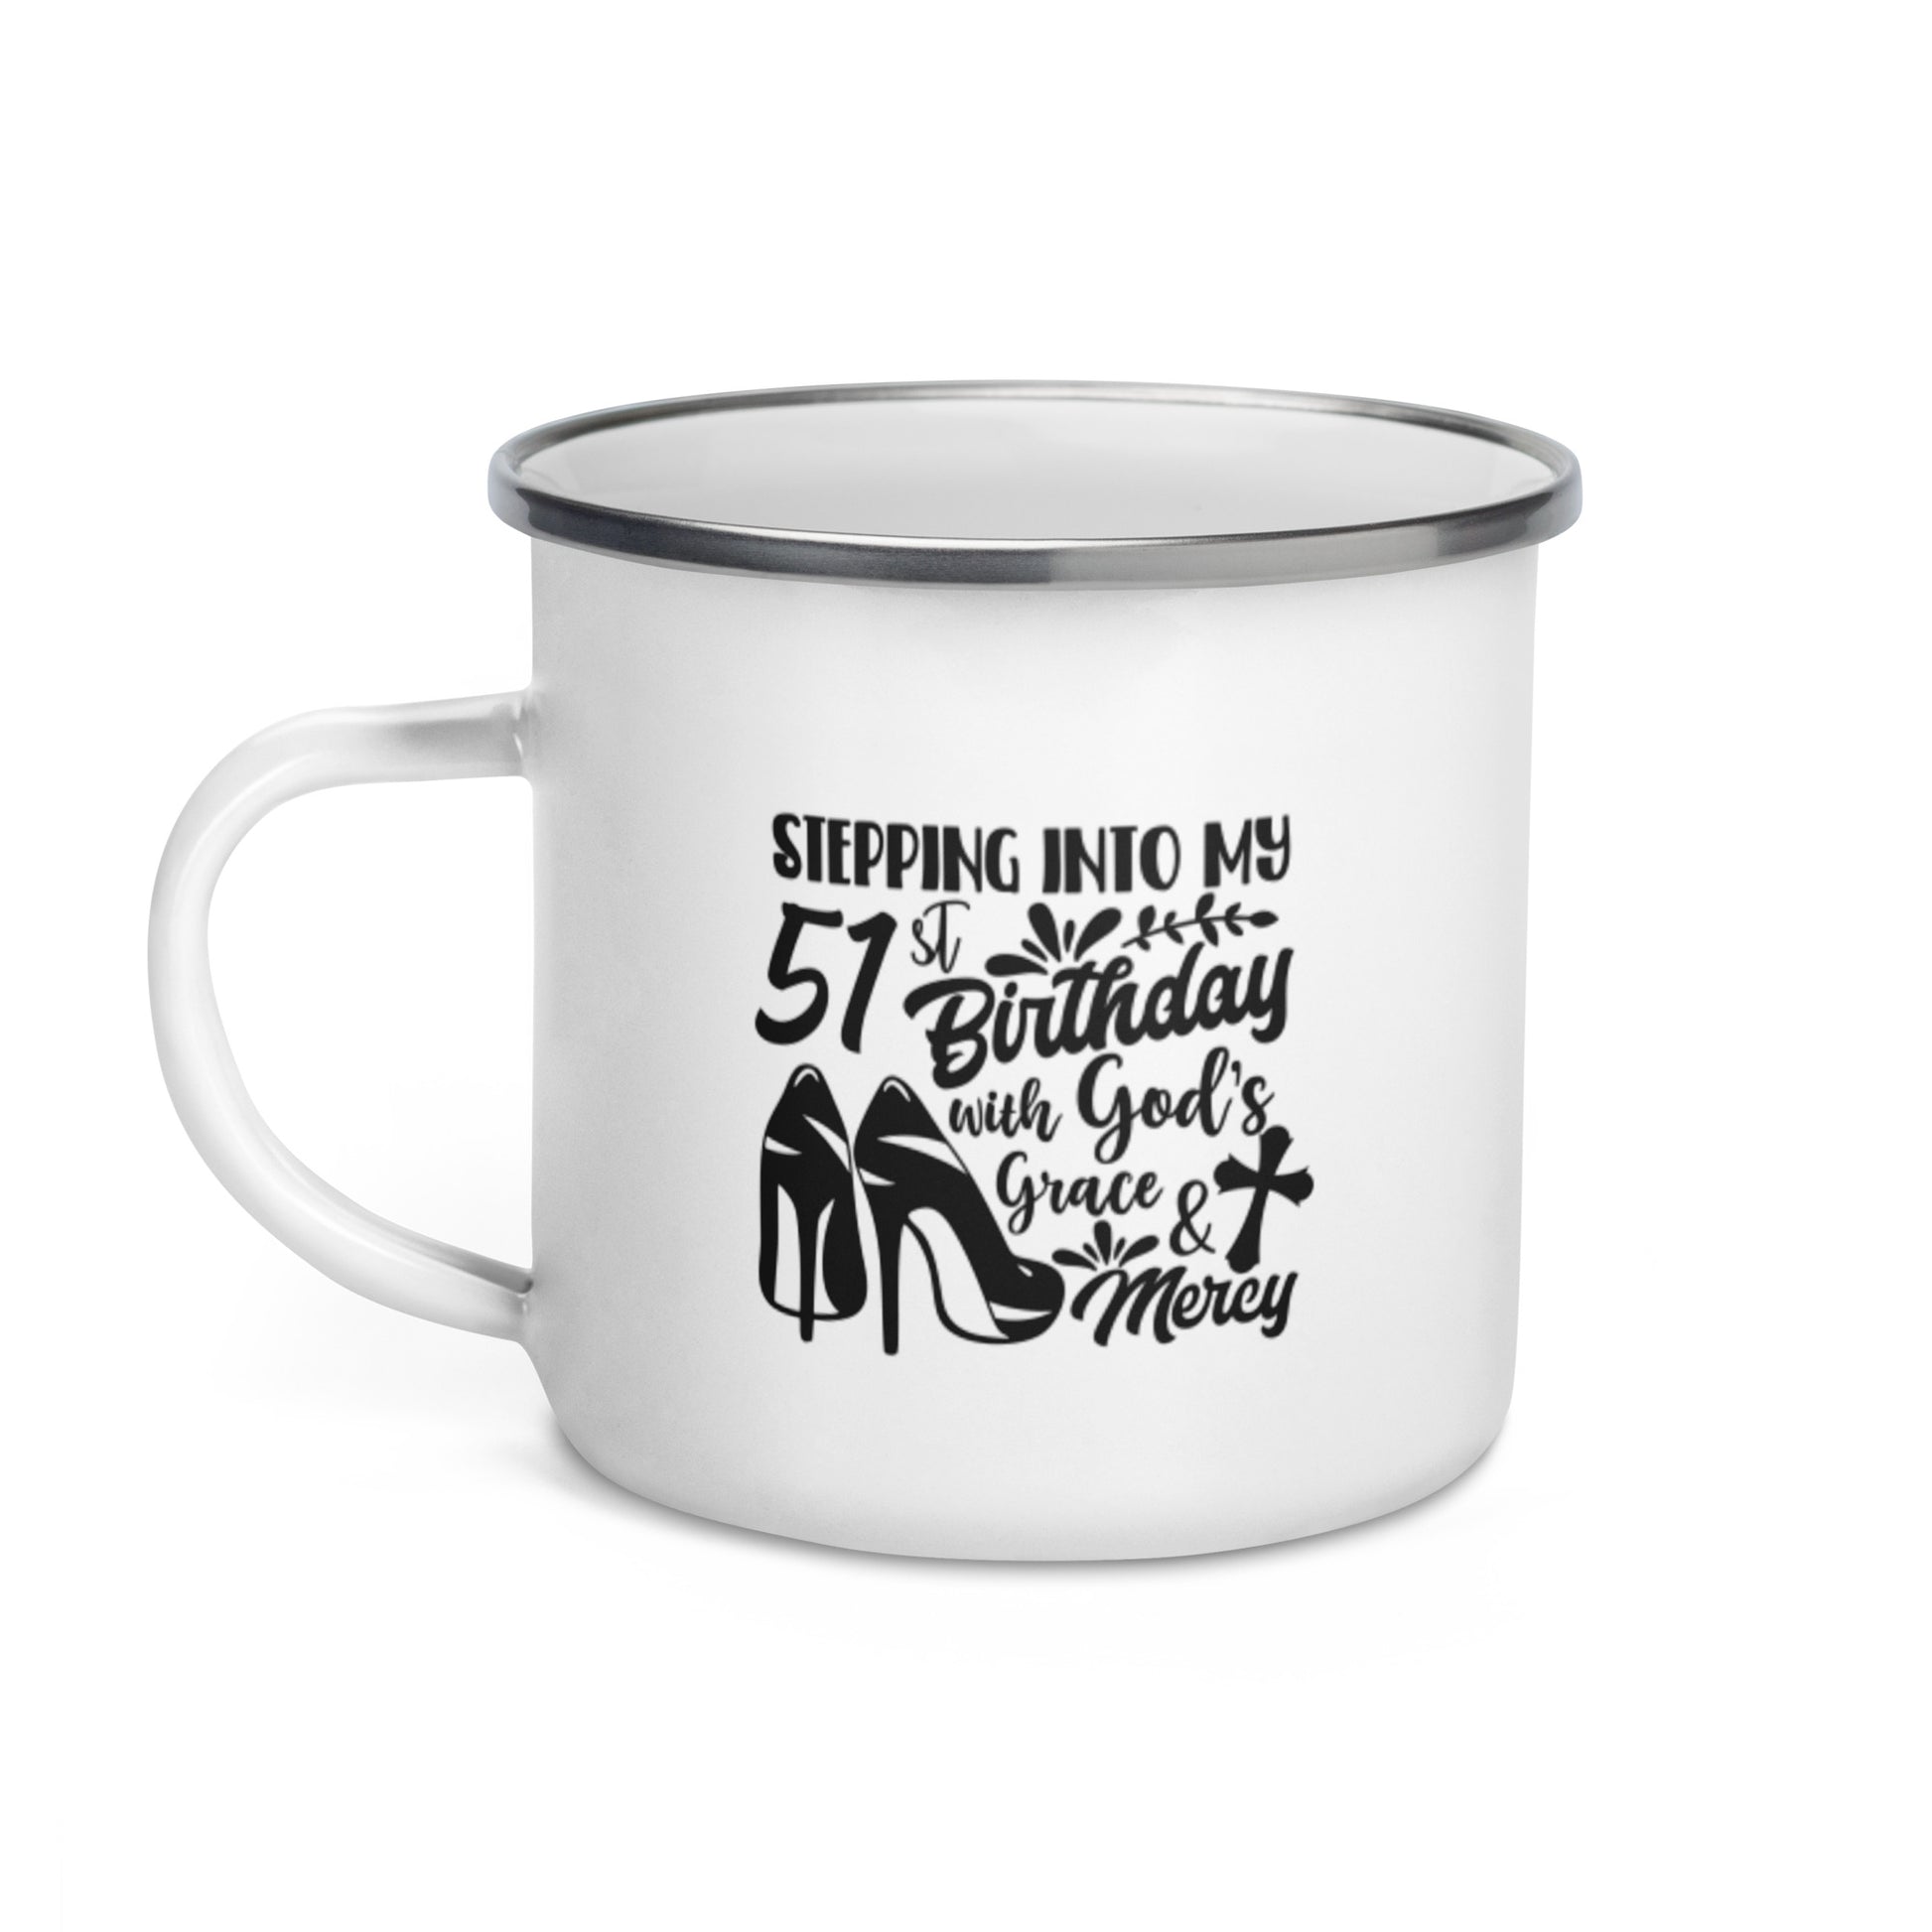 Stepping Into My 51st Birthday with God's Grace & Mercy White Enamel Mug